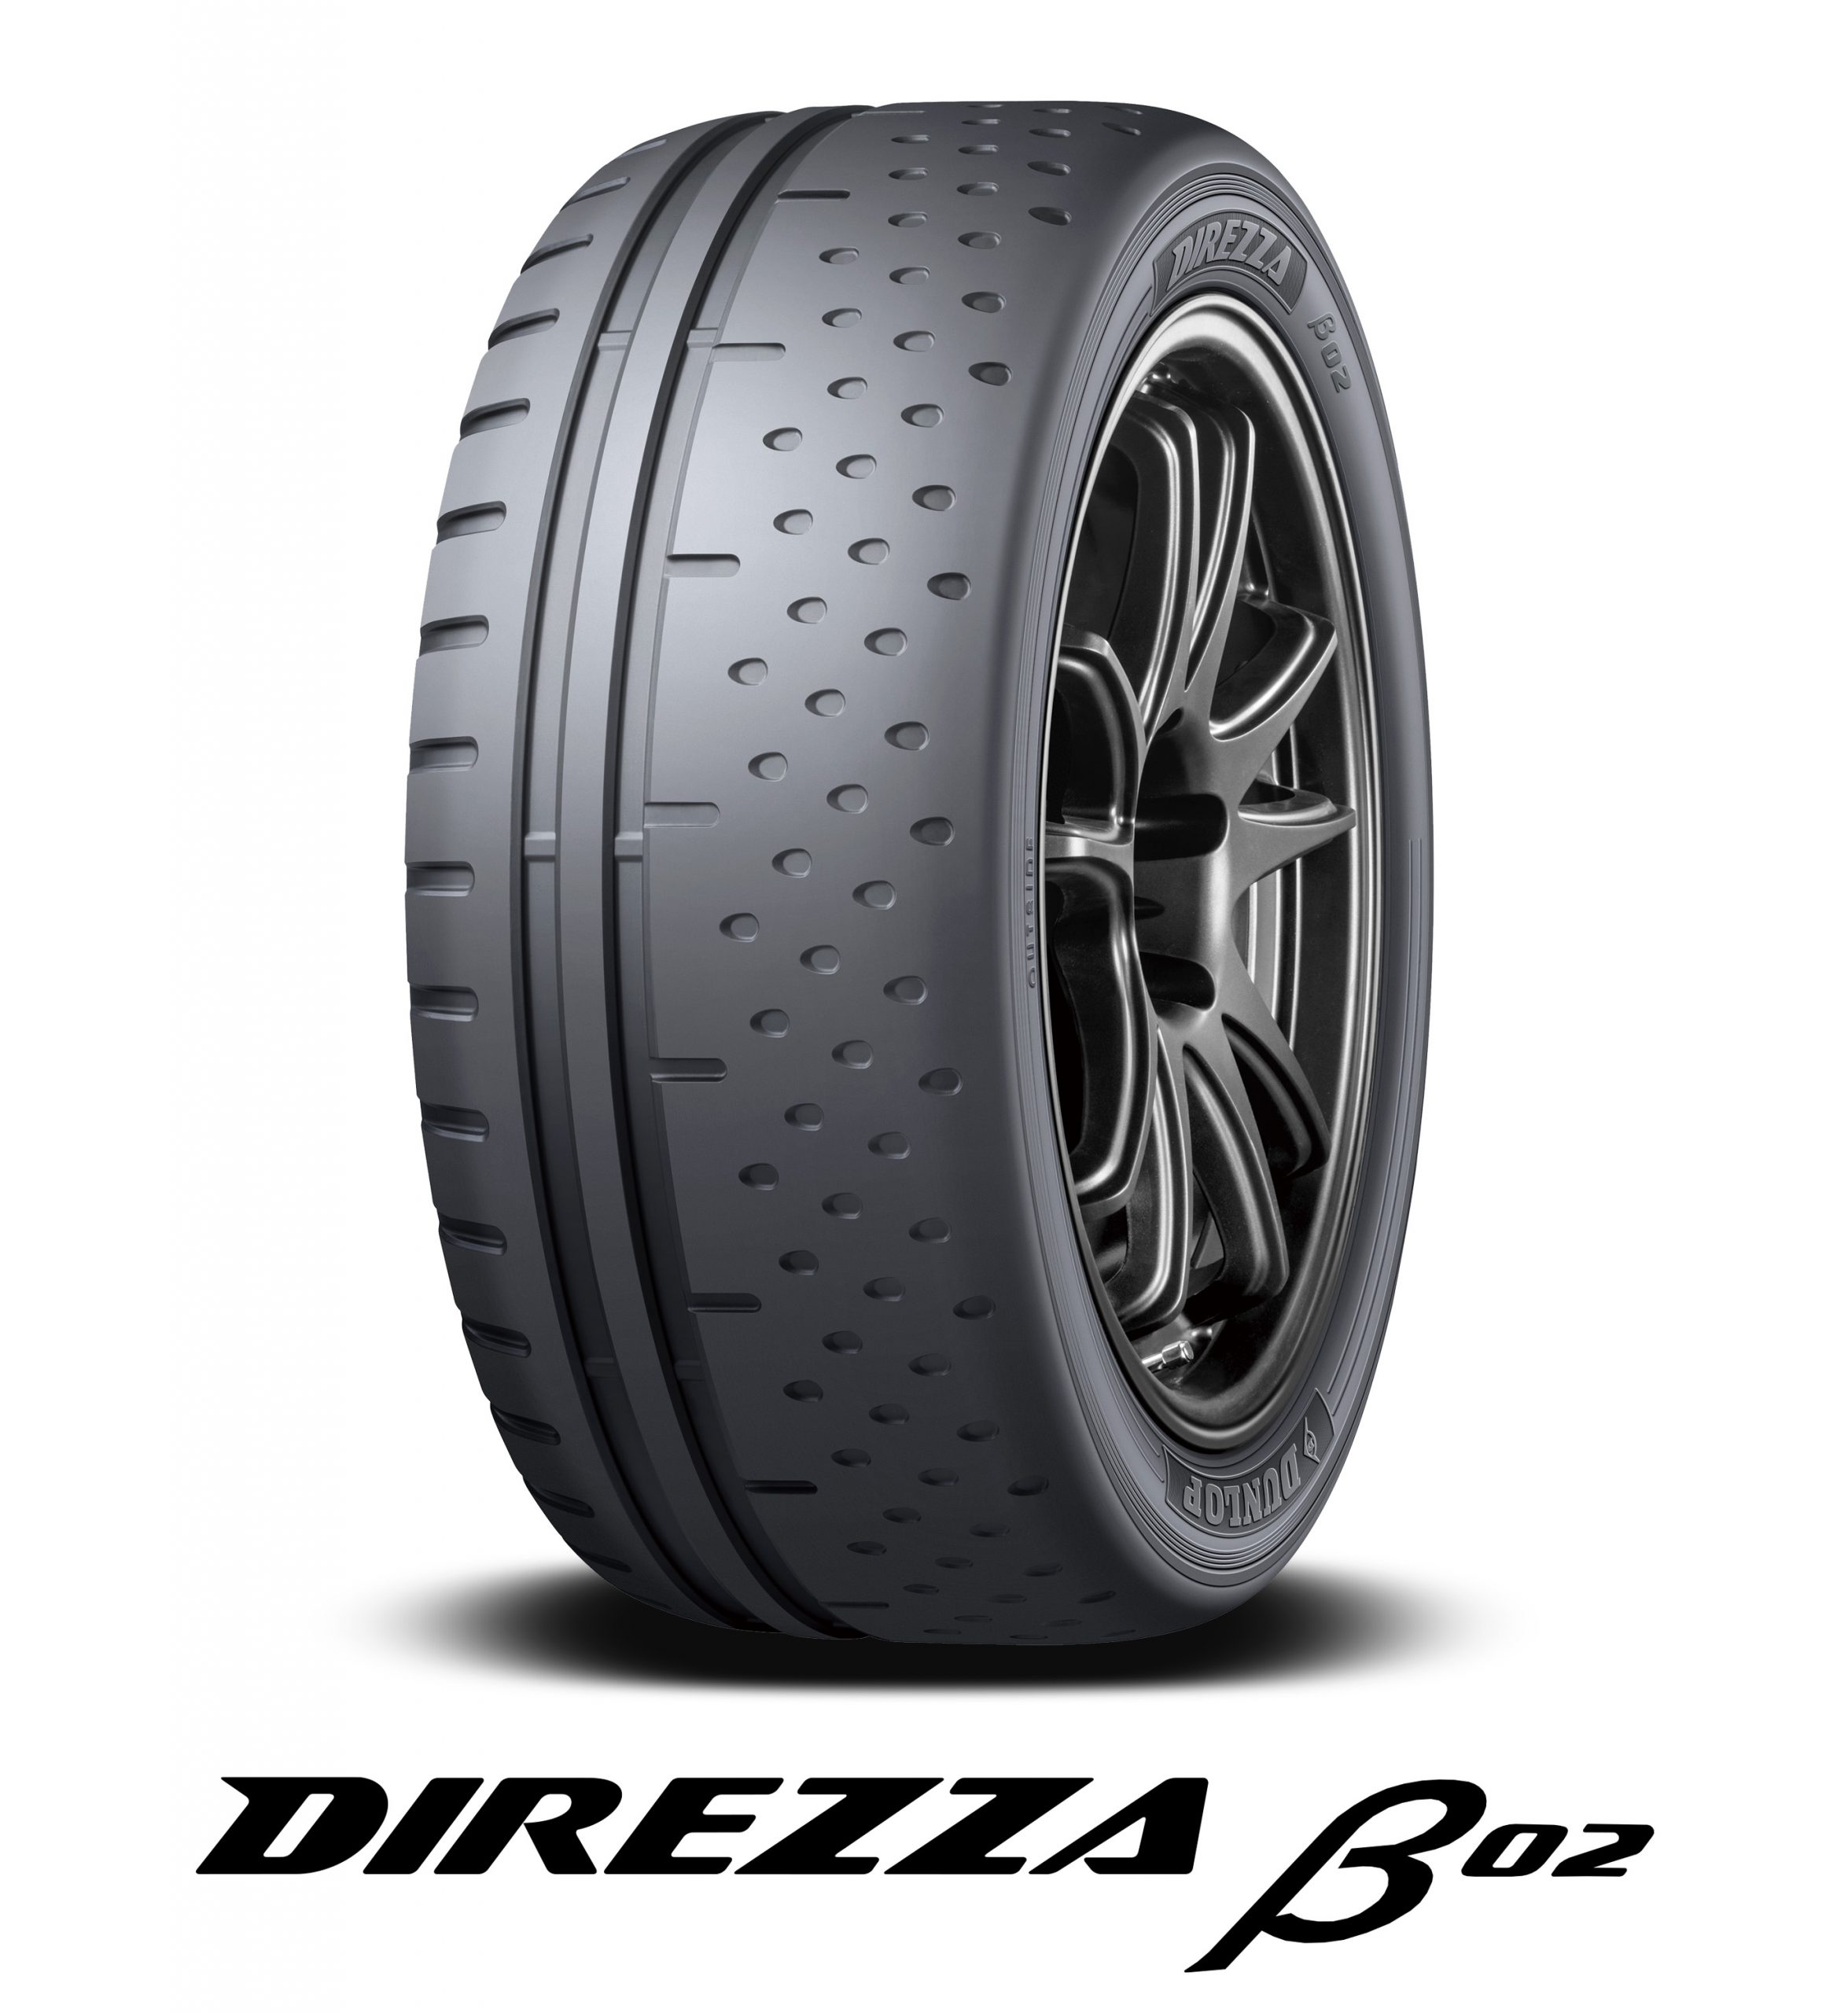 DUNLOP ダンロップ DIREZZA ディレッツァ Z3 ZIII 235 40R17 90W タイヤ単品1本価格 - 1